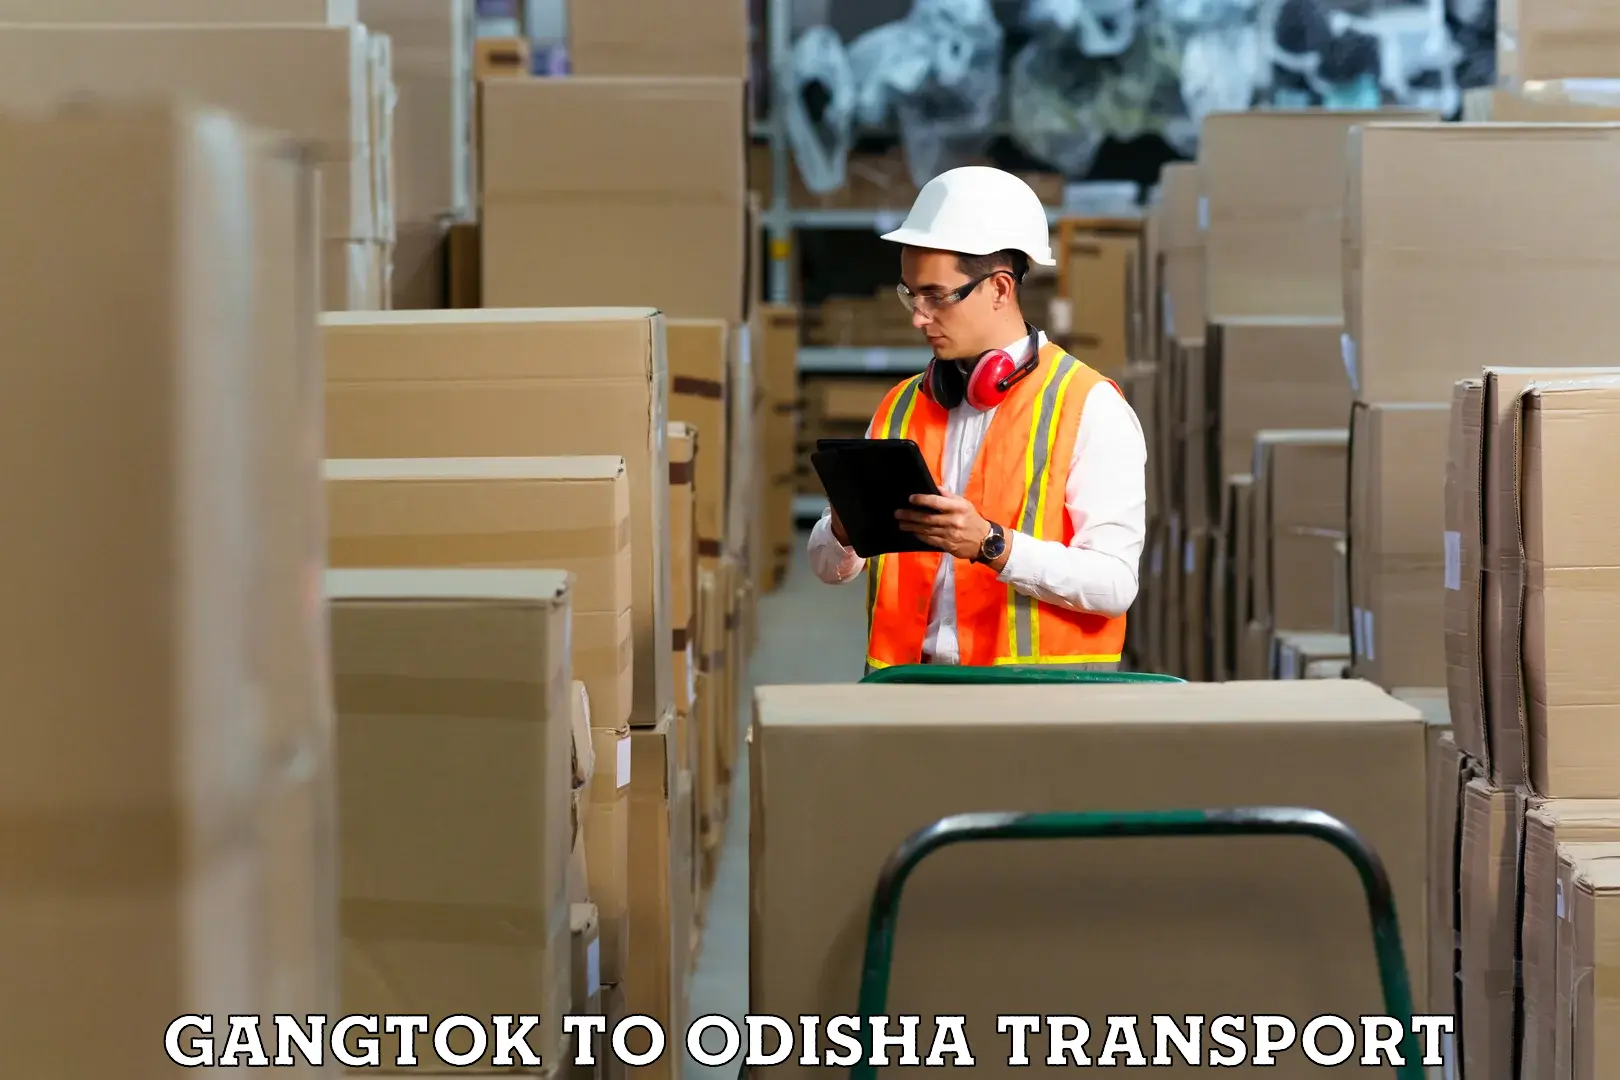 Lorry transport service Gangtok to Patkura